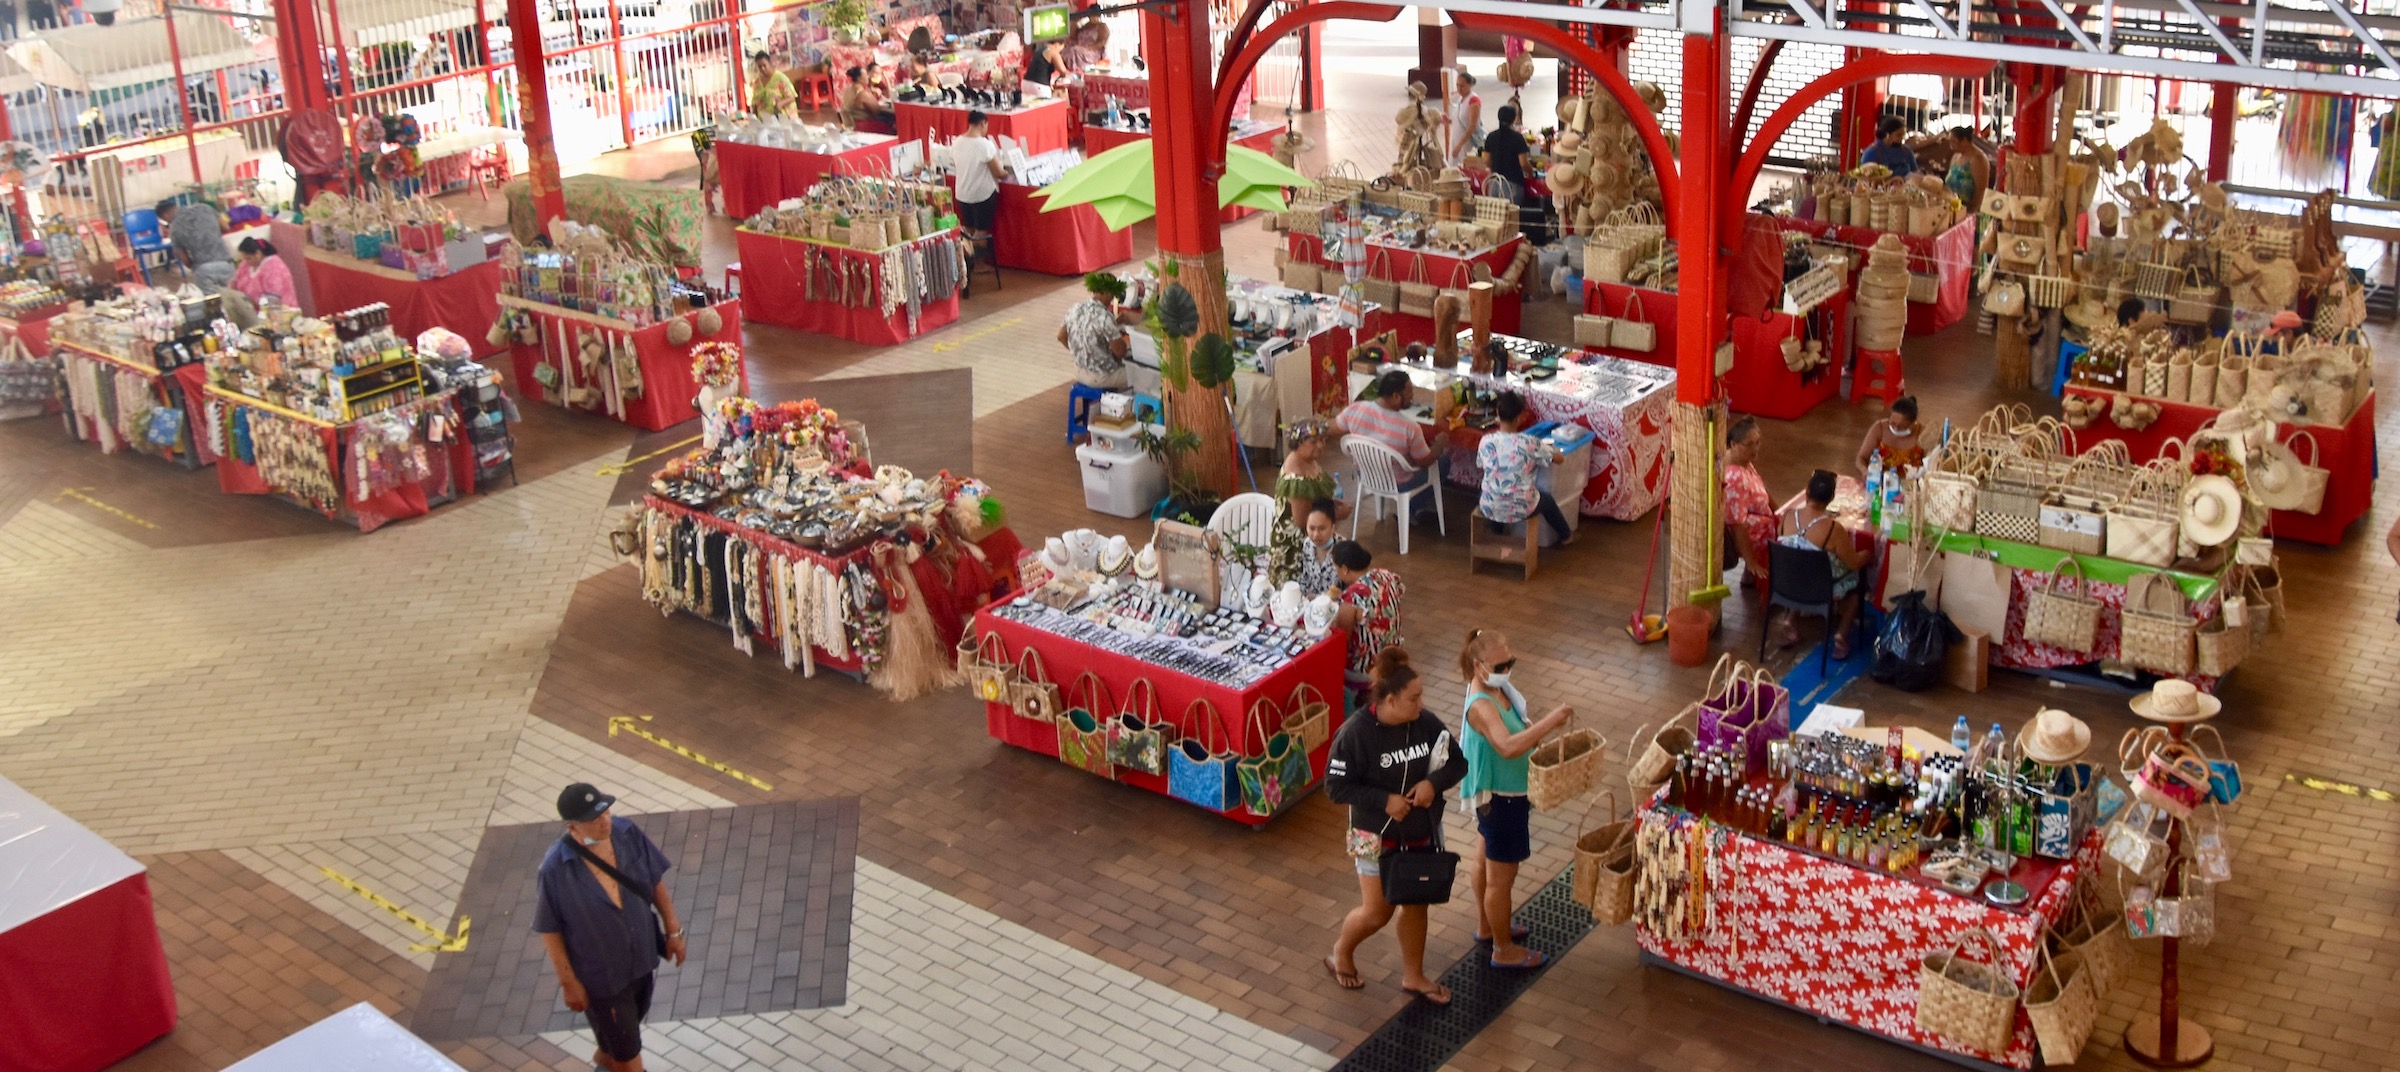 Papeete Market, Tahiti